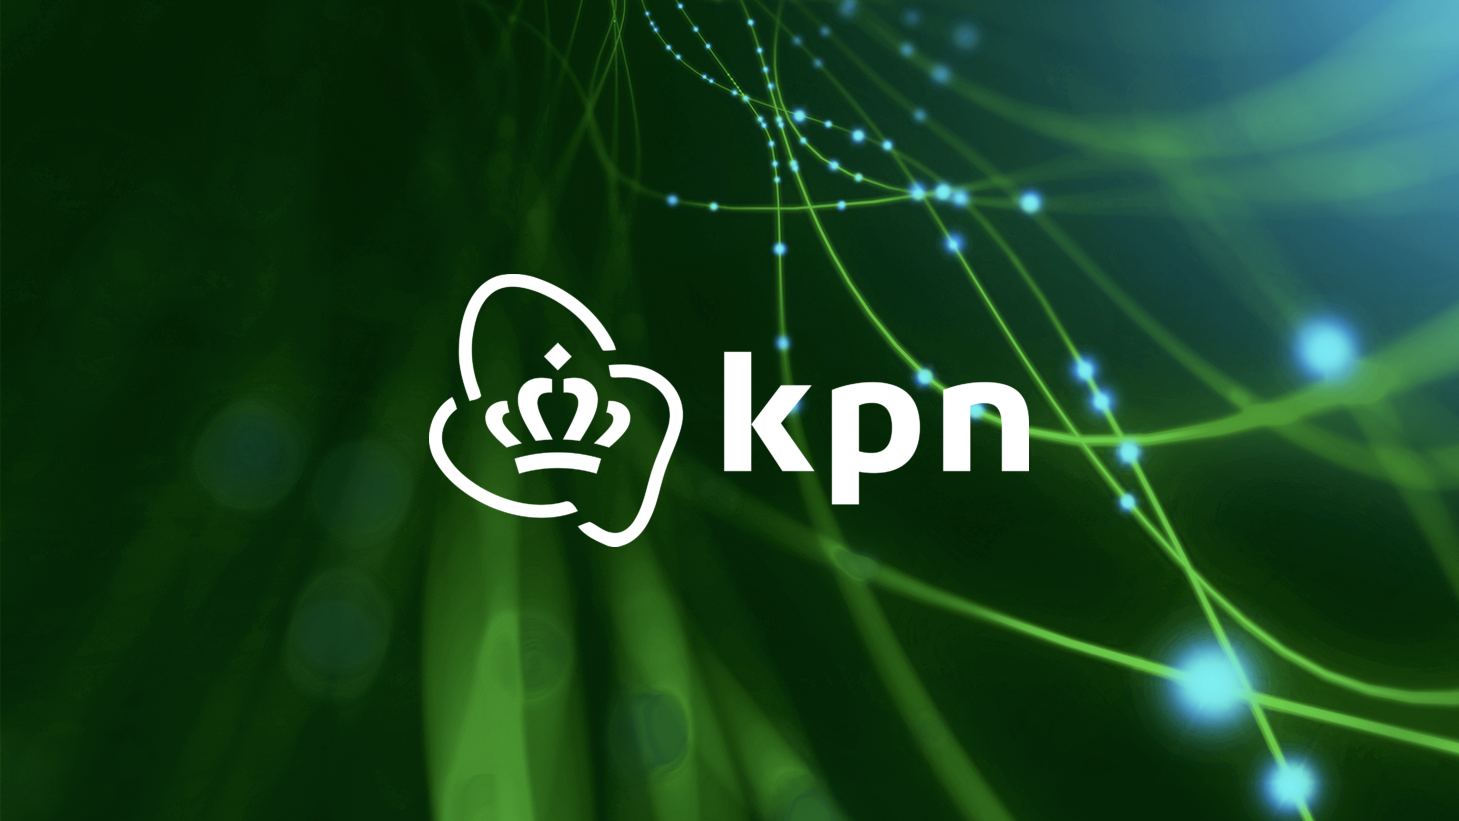 أخبار 24 نوفمبر 2020 تريد KPN الألياف الضوئية لكامل هولندا وتشاركها في خططها للسنوات القادمة